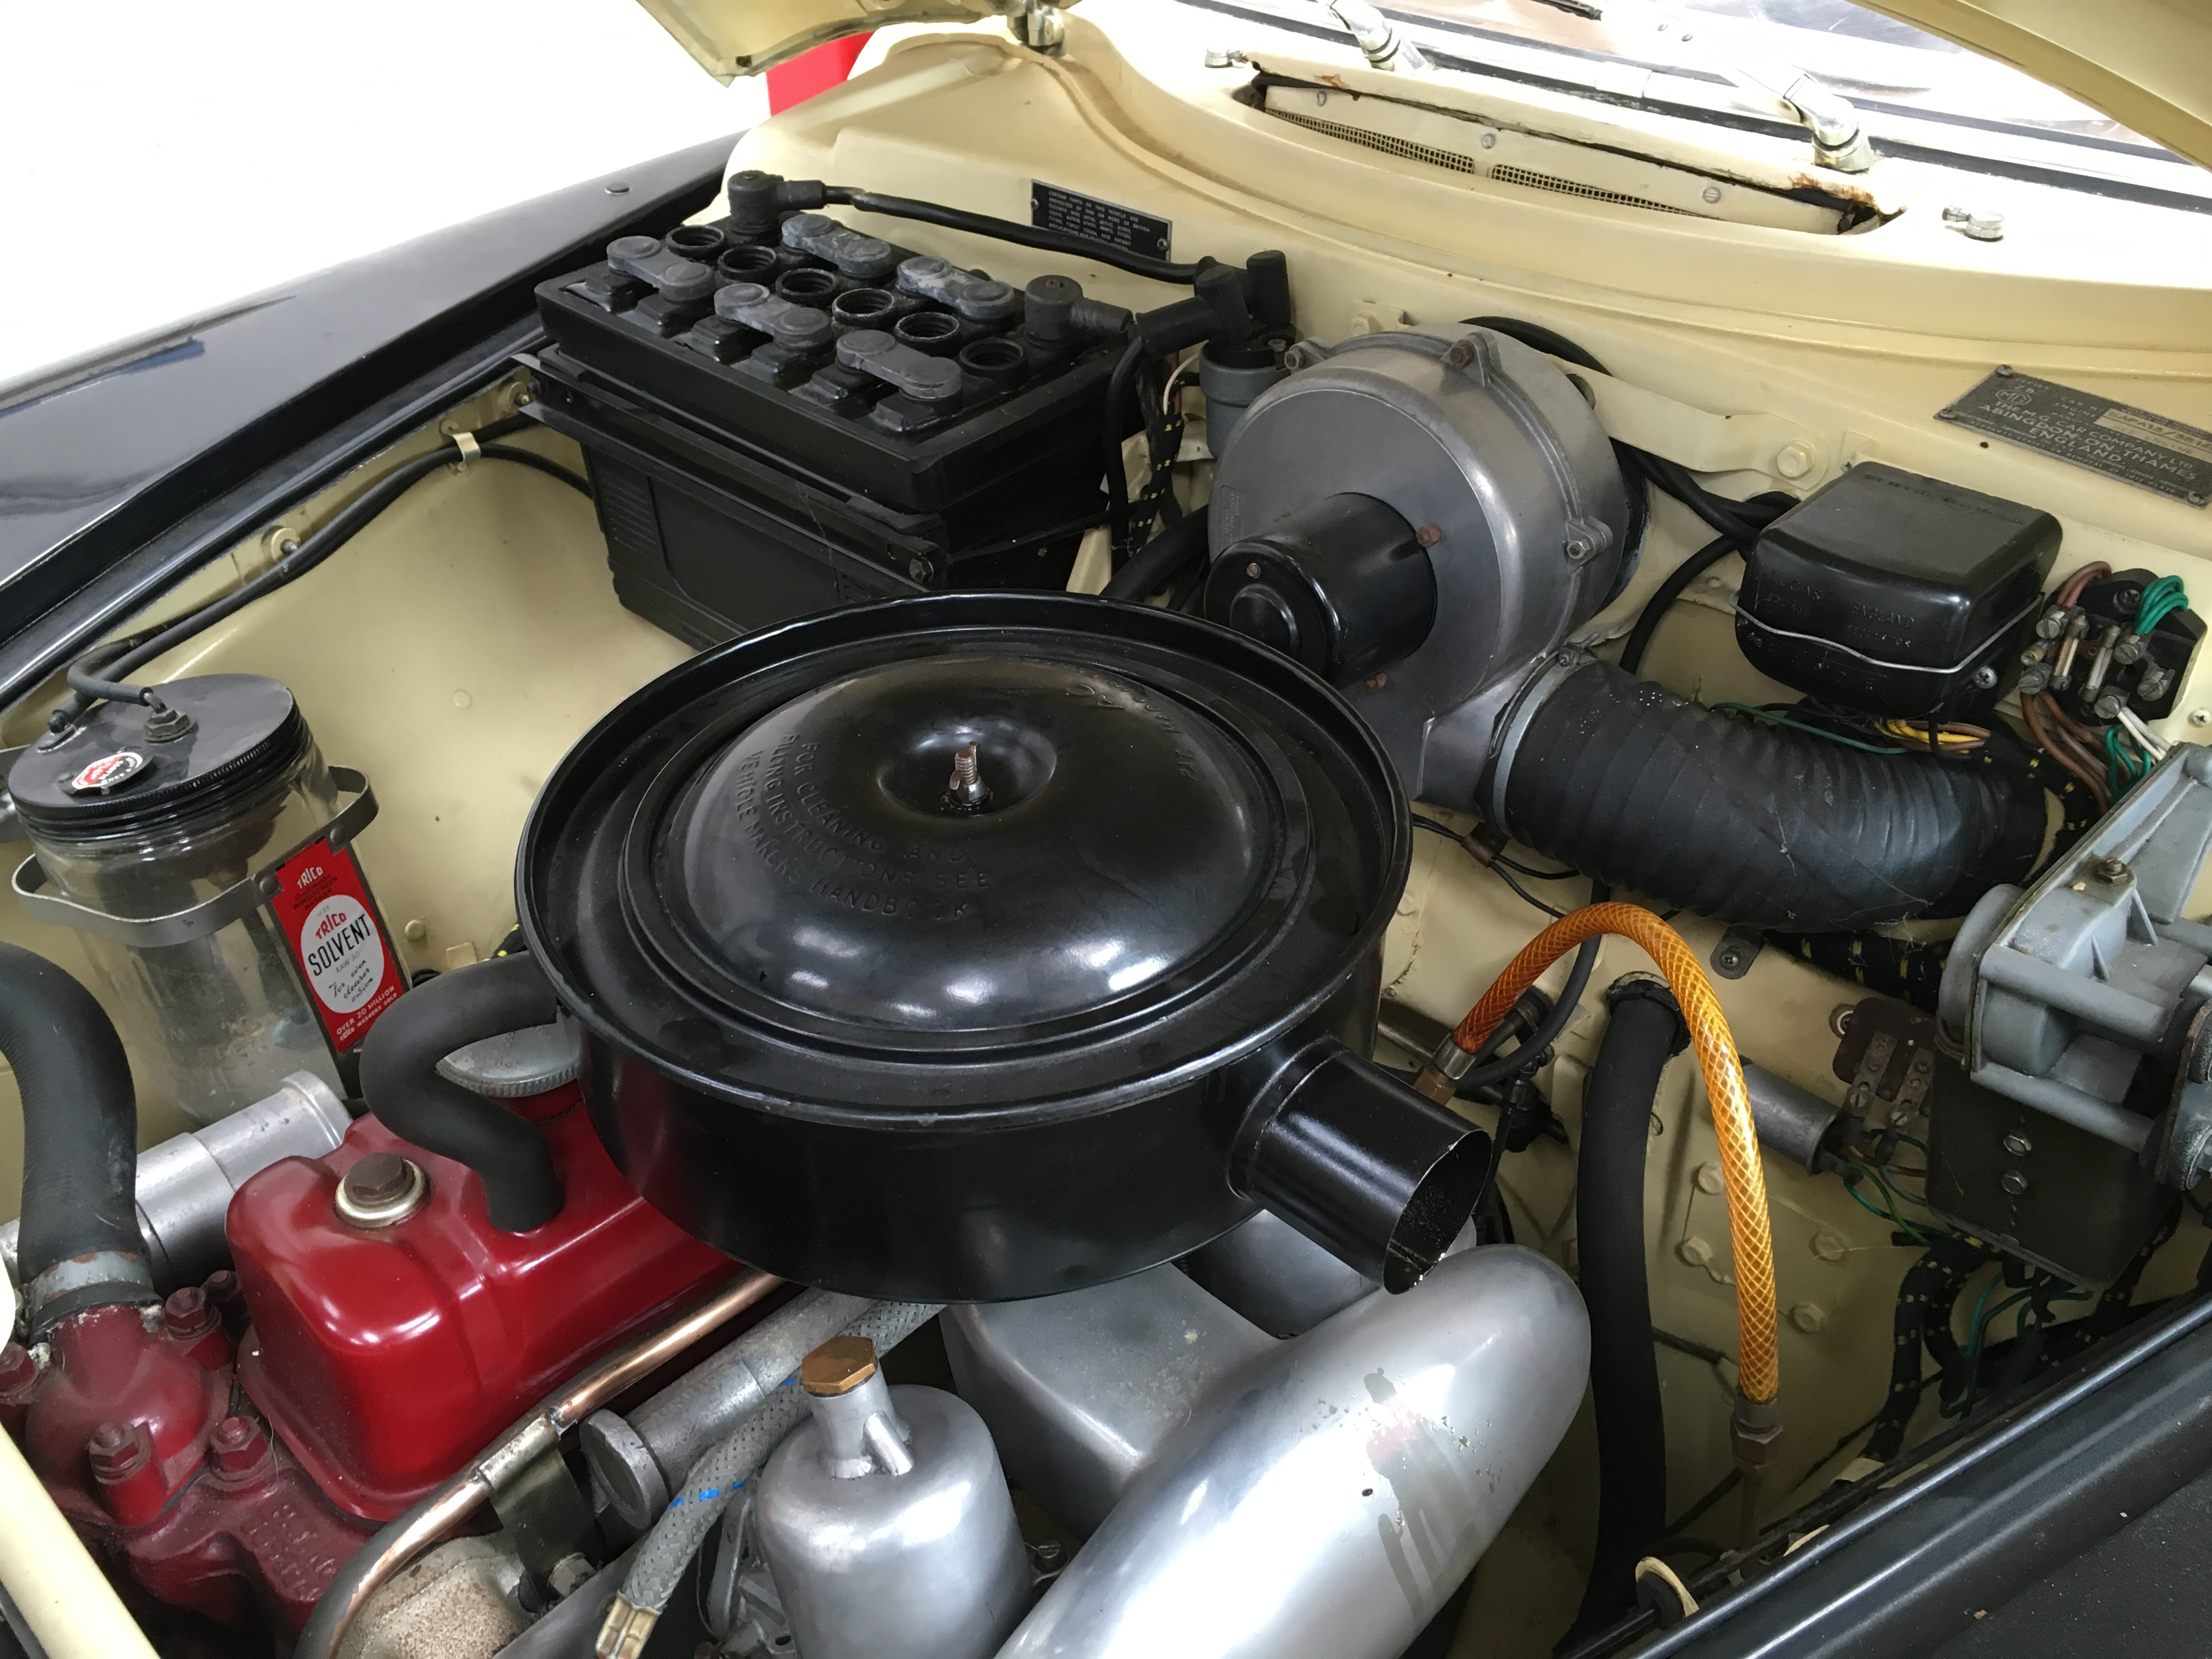 1958 MG Magnette Engine Bay